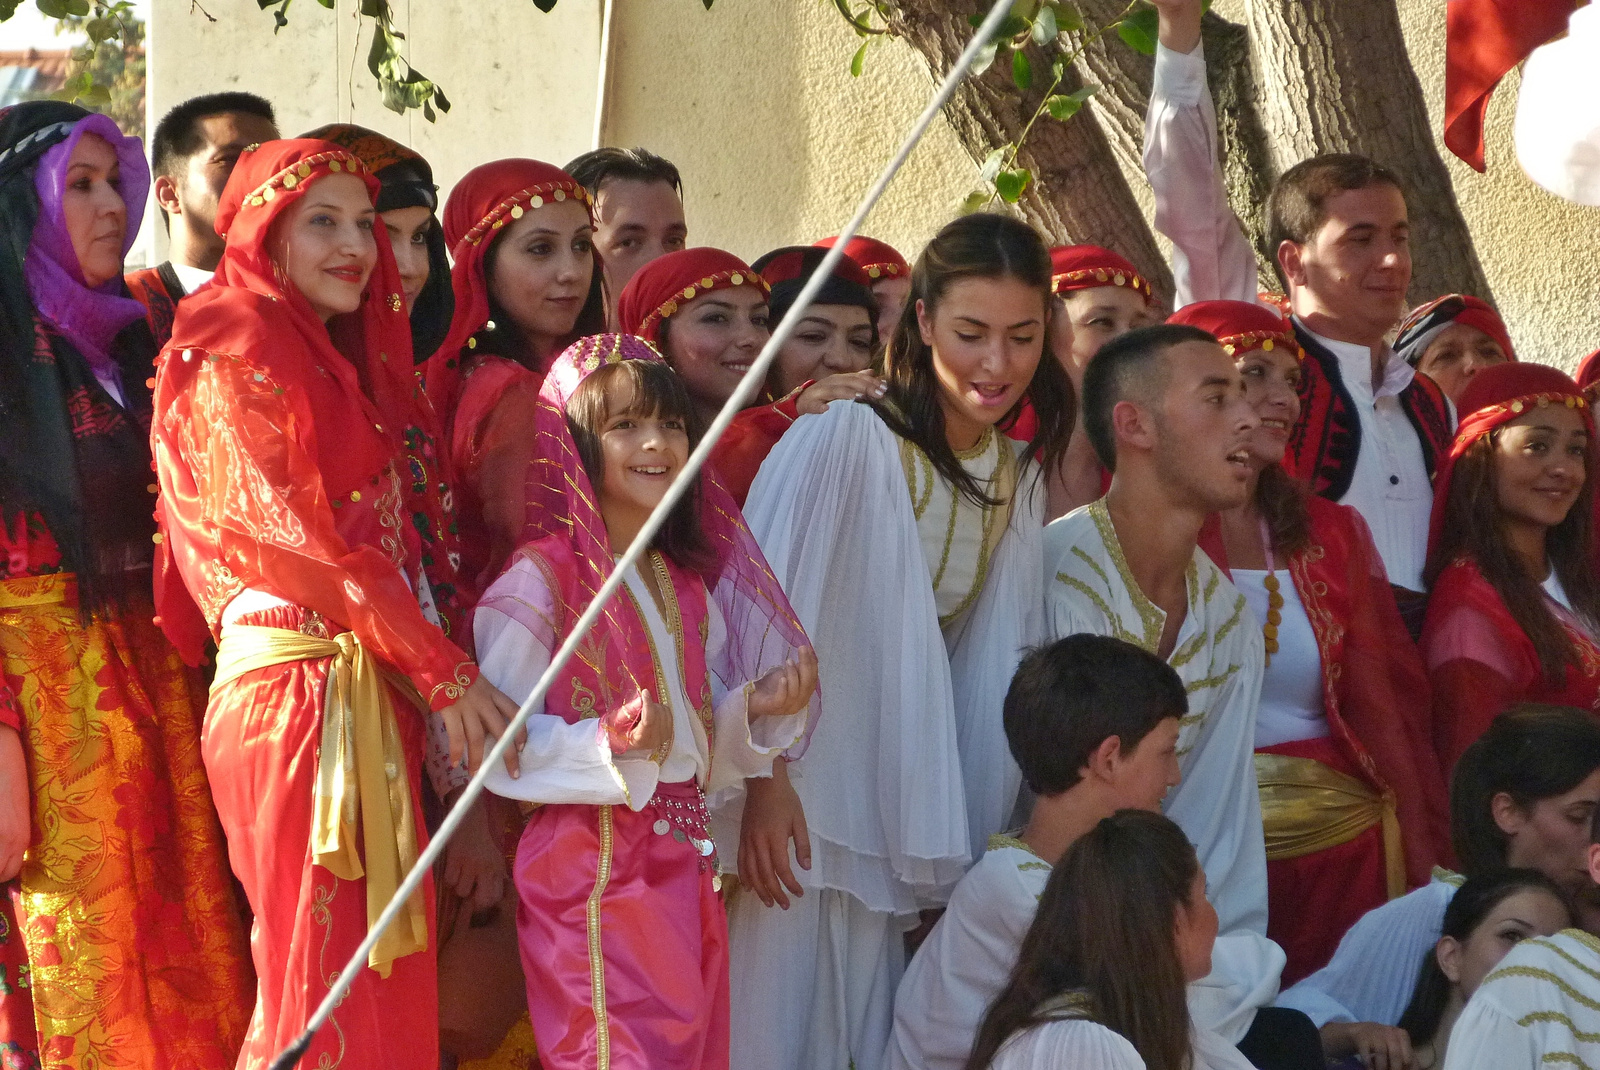 török és görög táncosok